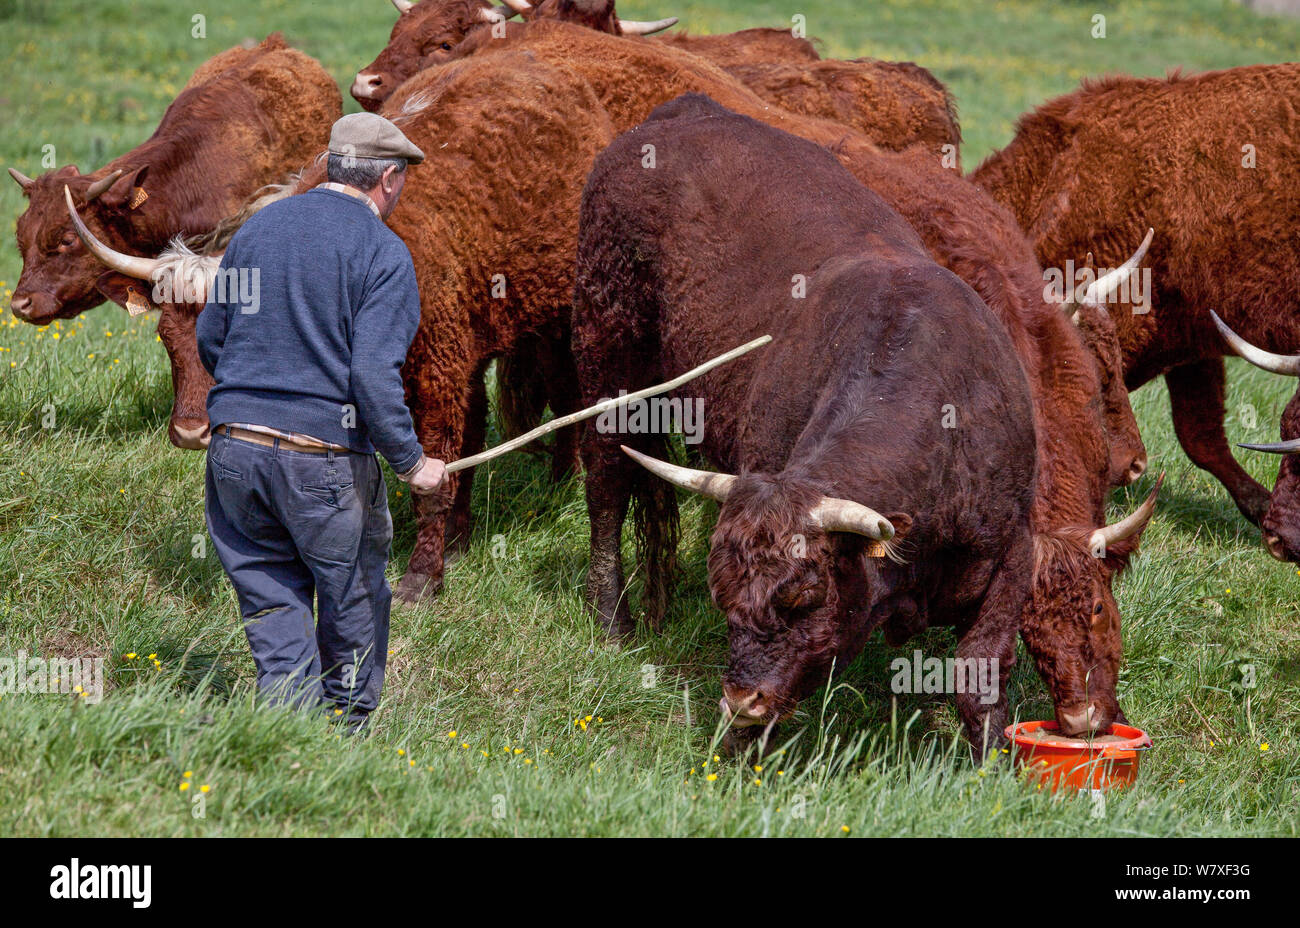 Alimentation agriculteur Salers bull et troupeau près de Craonne, Picardie, France, mai 2014. Banque D'Images